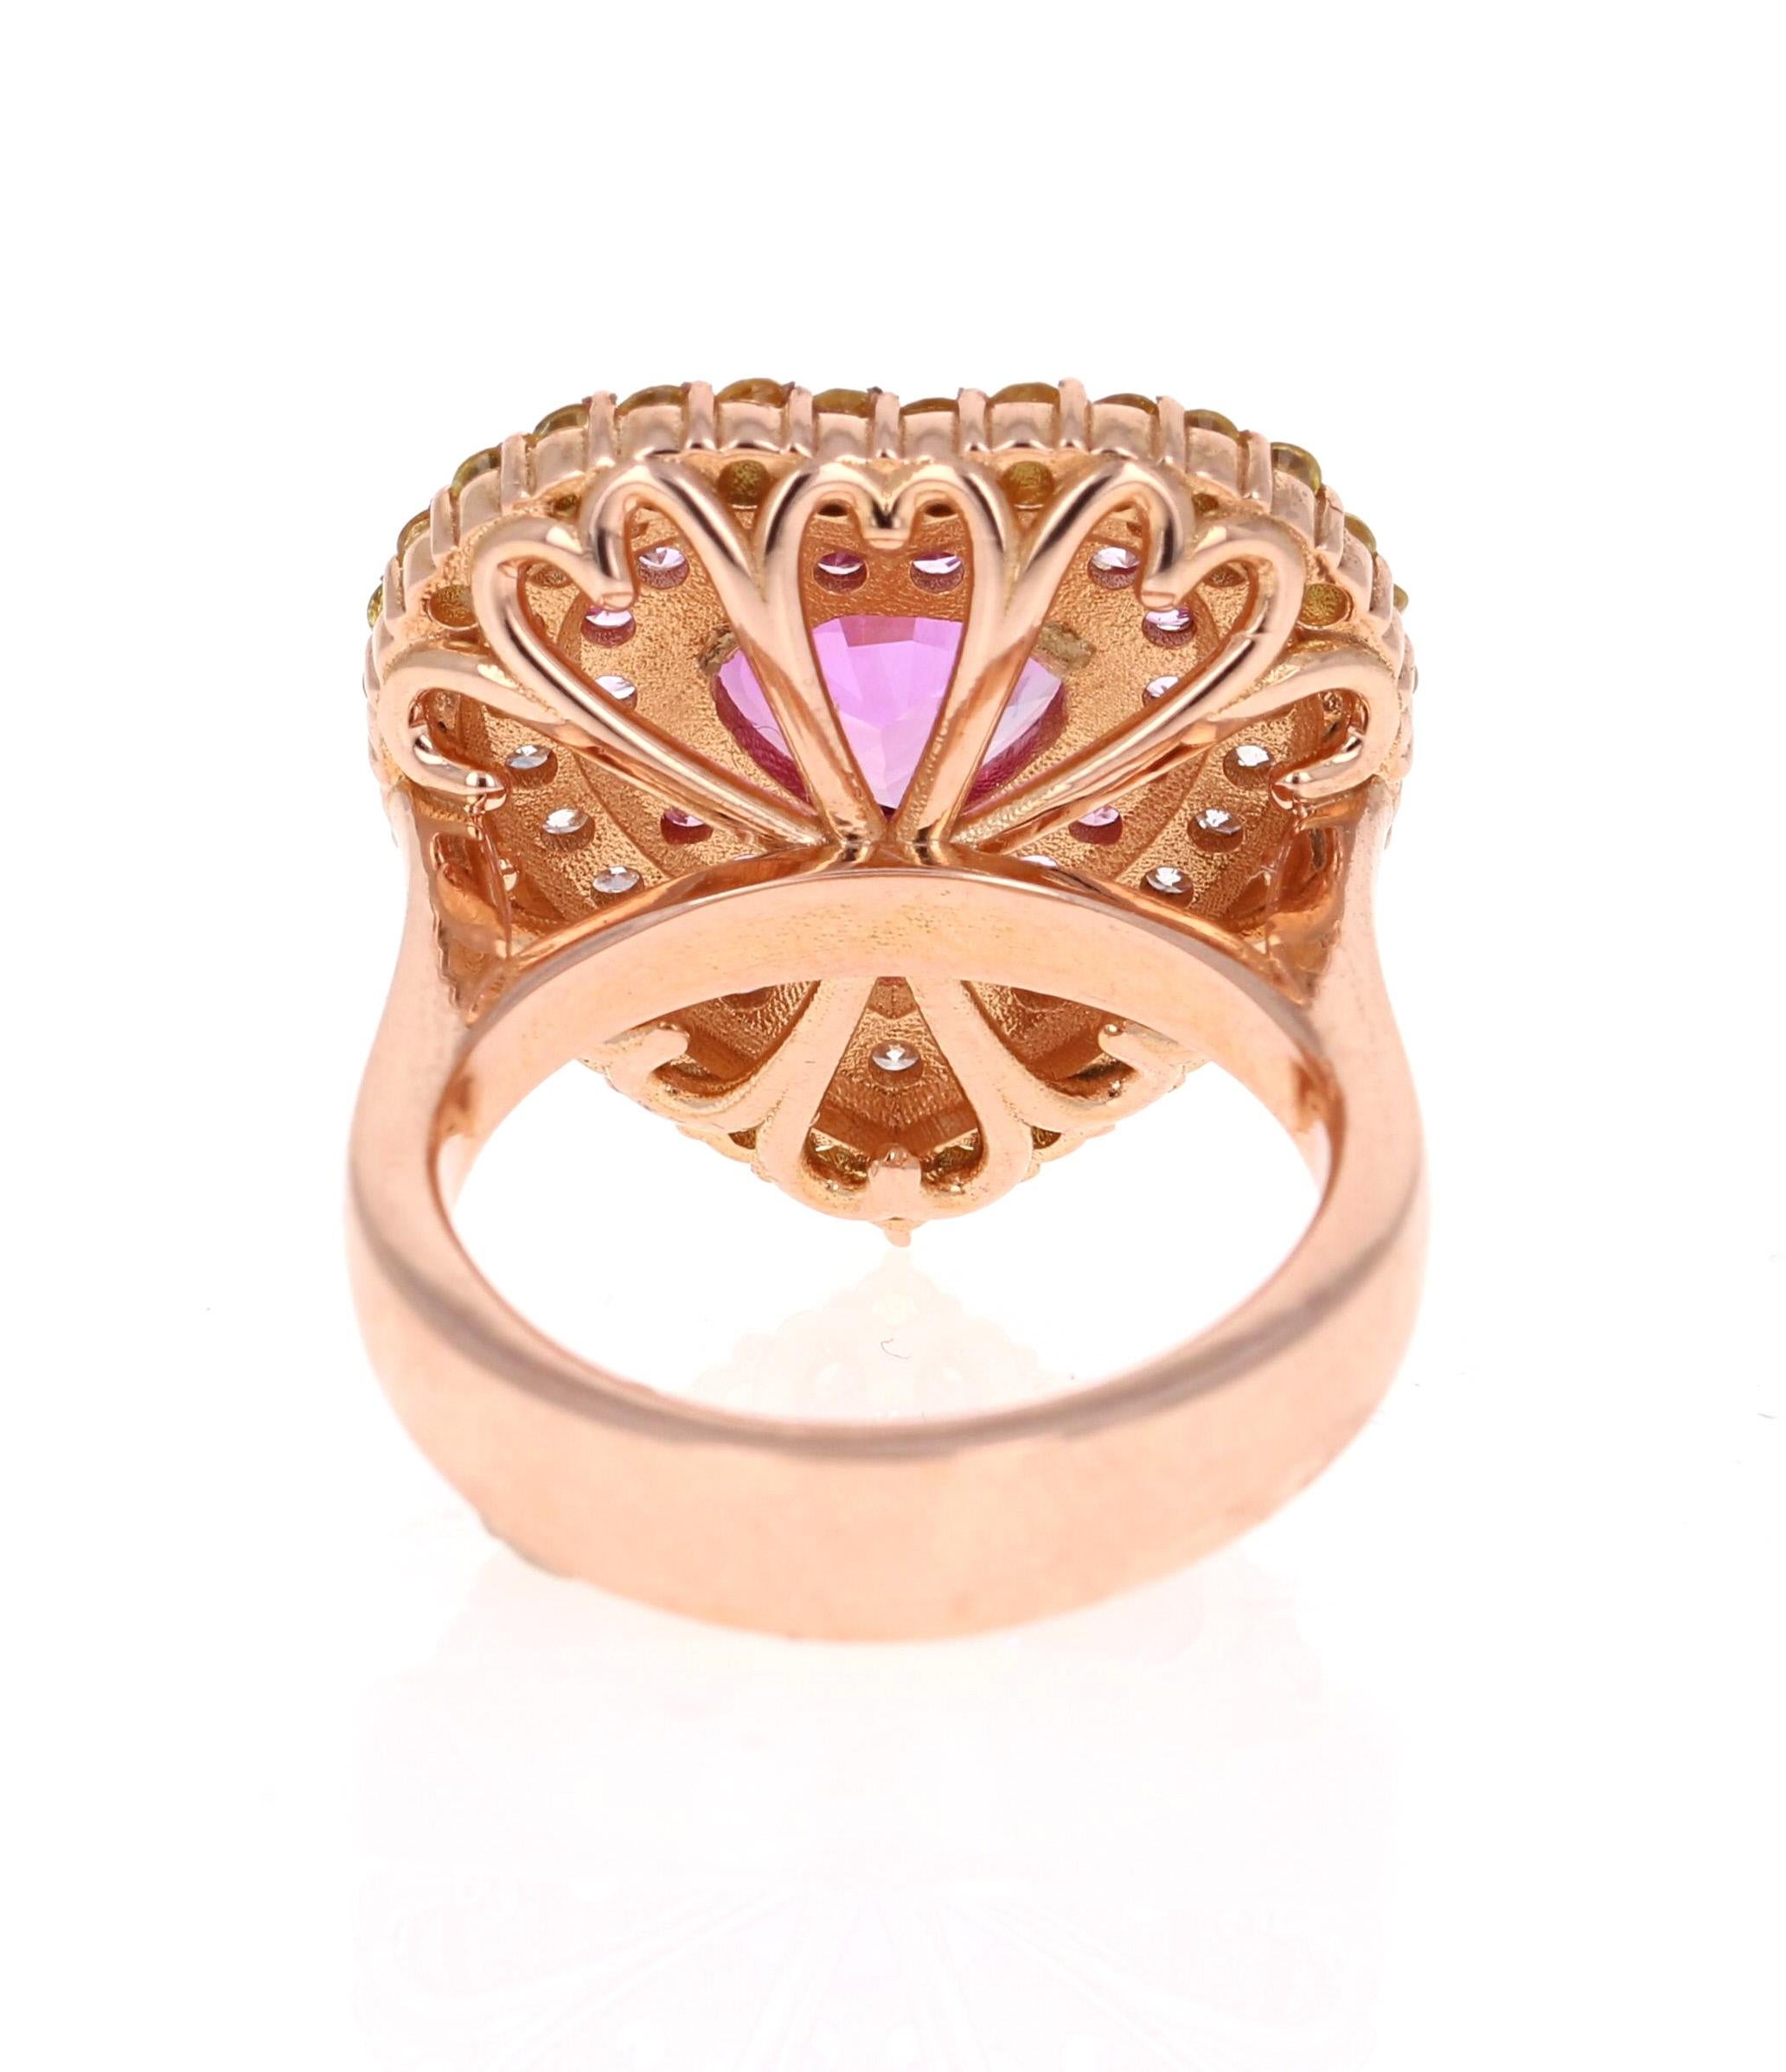 Round Cut 4.55 Carat GIA Certified Pink Sapphire Diamond 18 Karat Rose Gold Ring